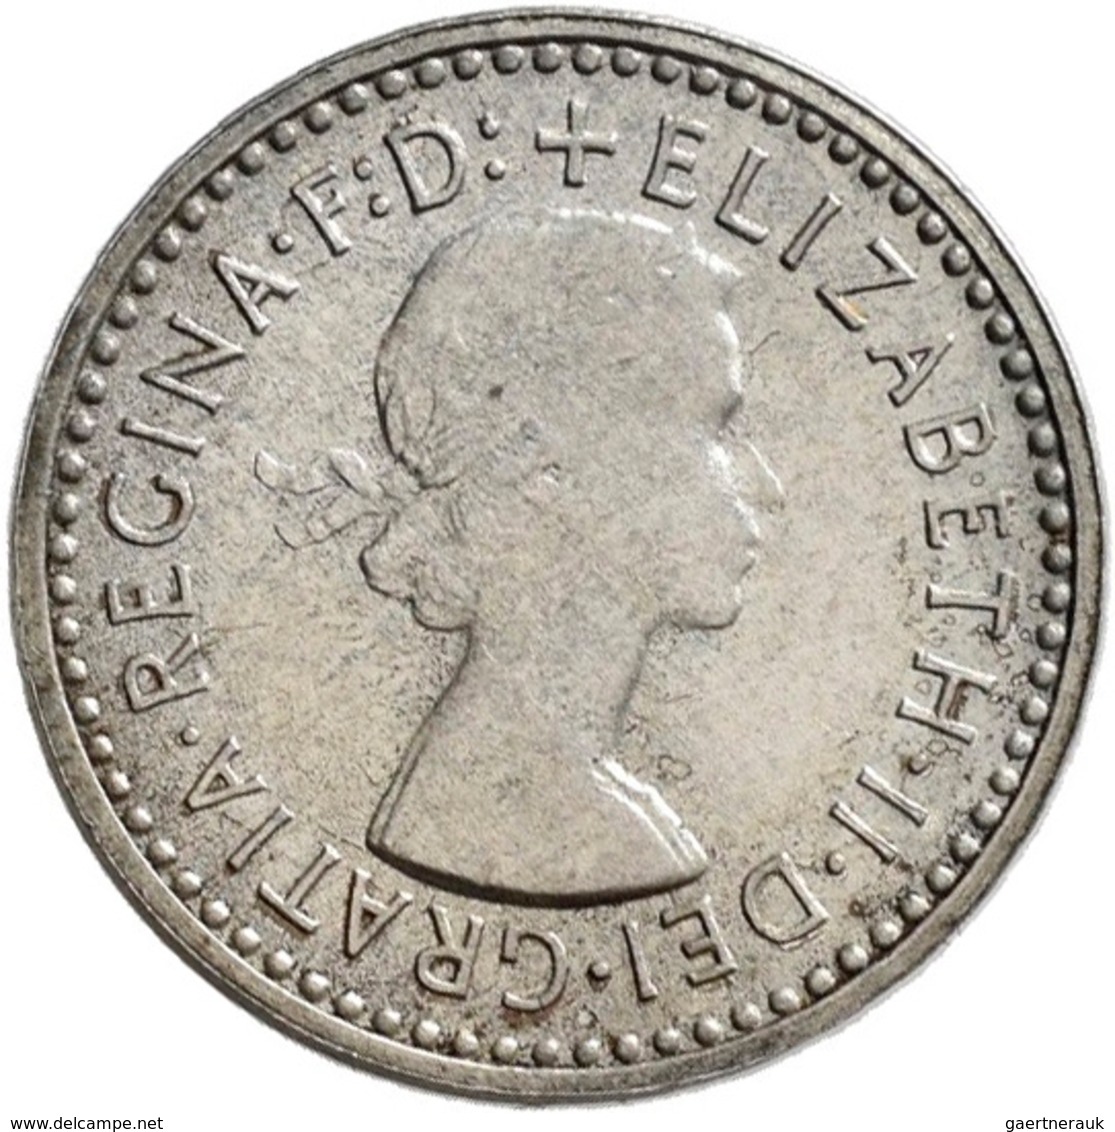 Großbritannien: Elizabeth II. 1952-,: Maundy Set 1,2,3,4 Pence 1963, vorzüglich, vorzüglich-Stempelg